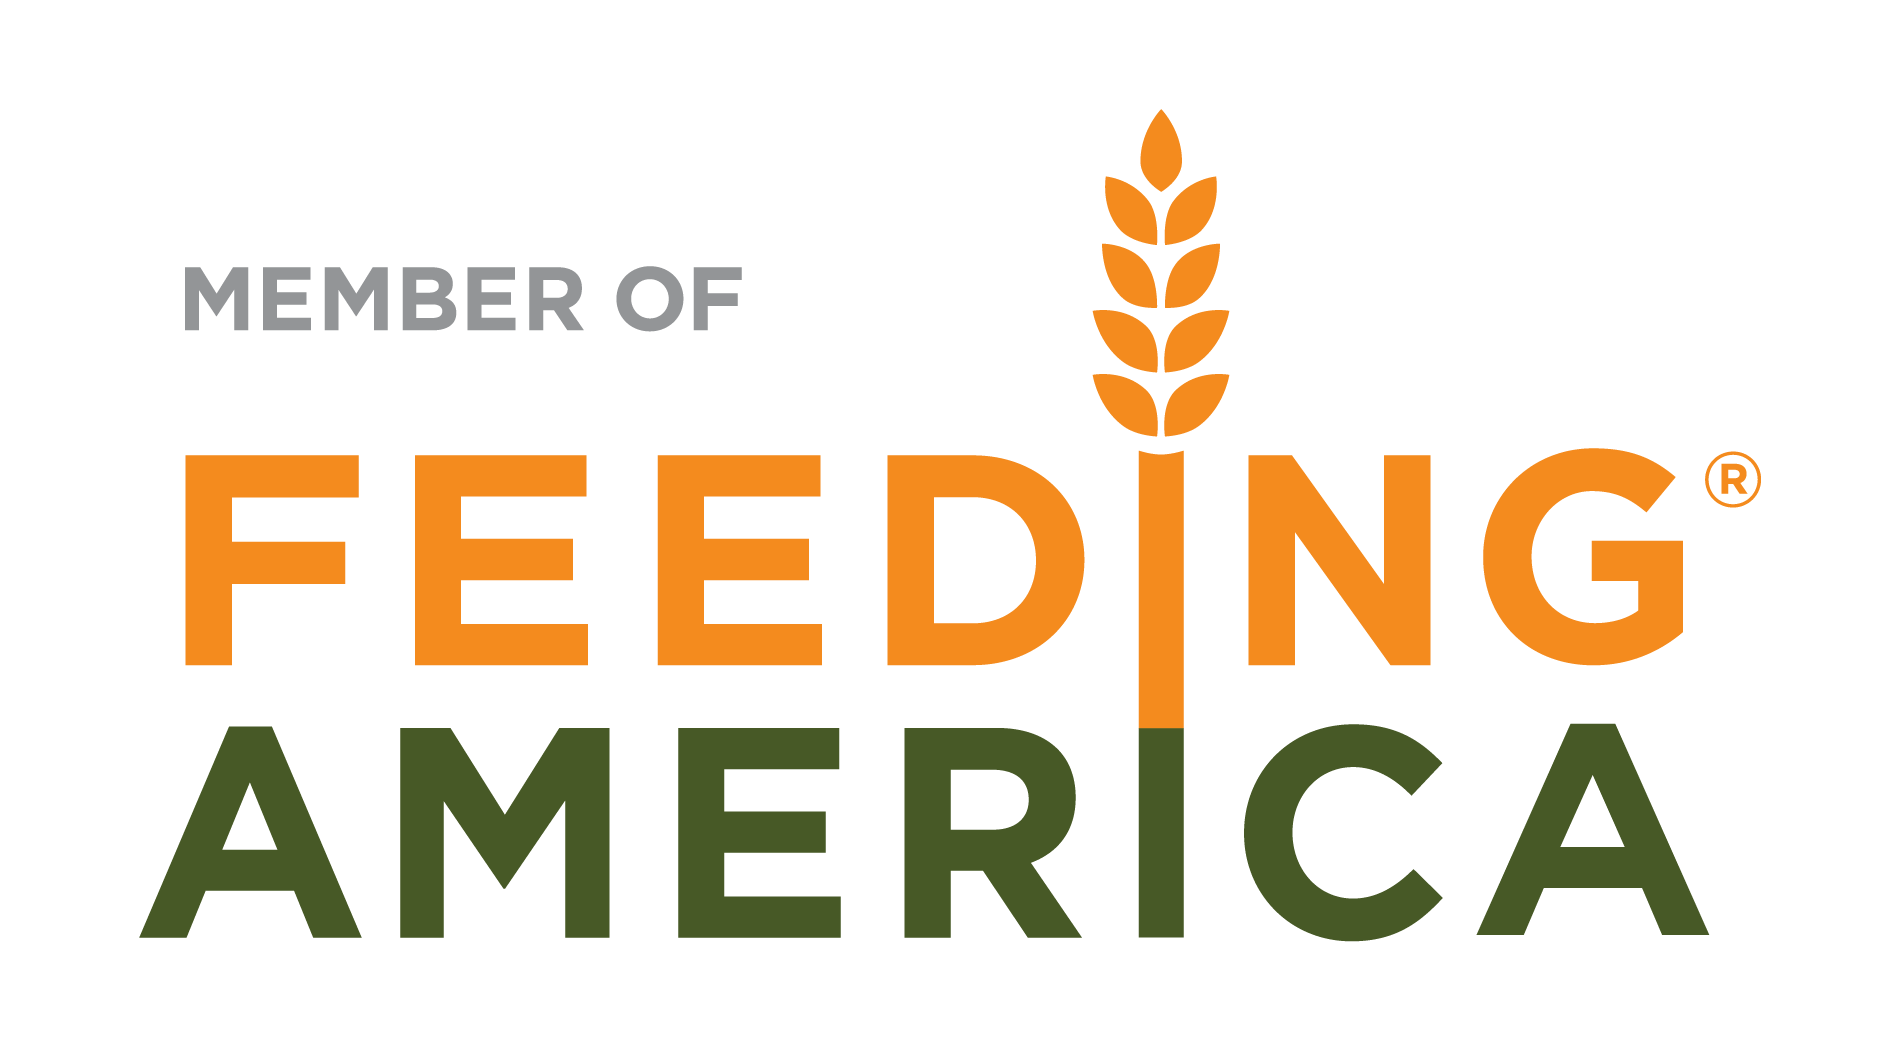 Feeding america Logo